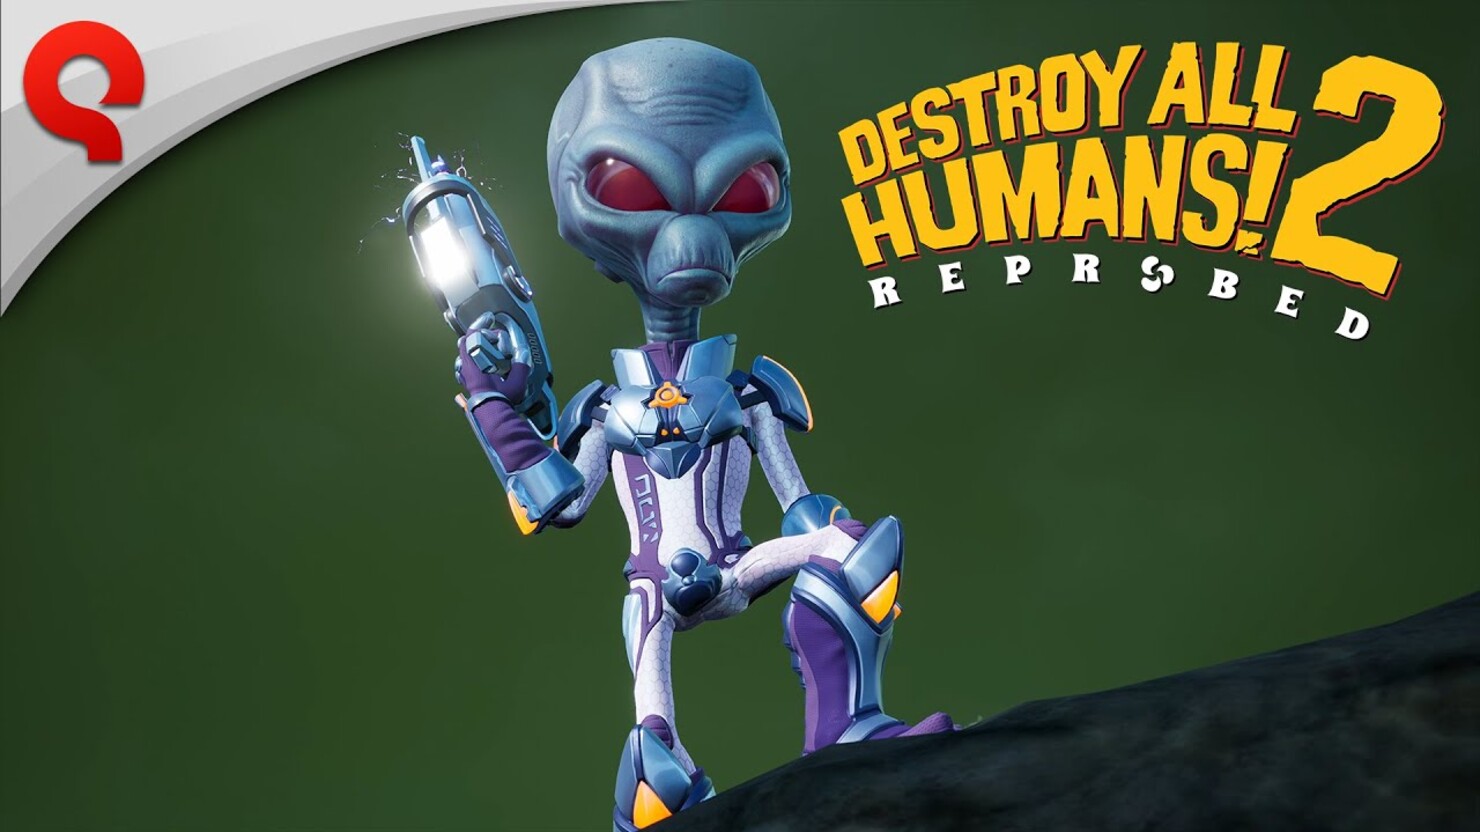 "Эй, ухнем!" — новый трейлер Destroy All Humans 2! — Reprobed